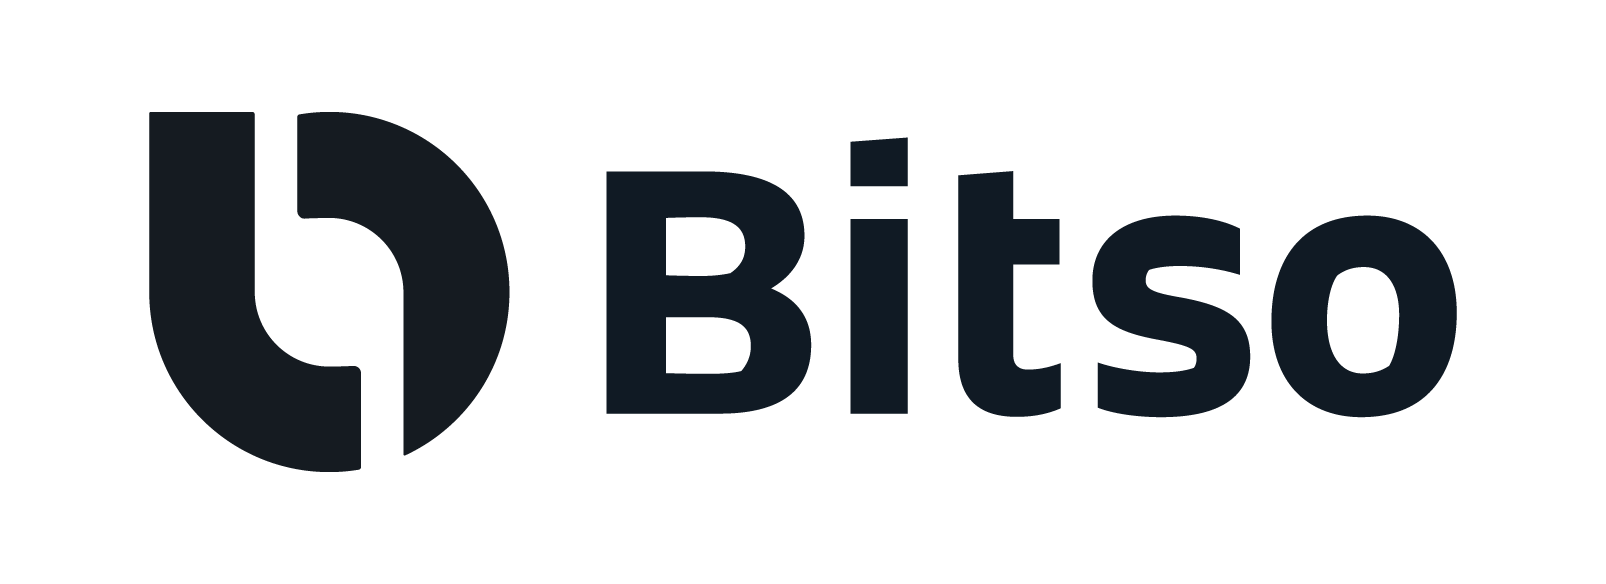 Bitso-logo.png